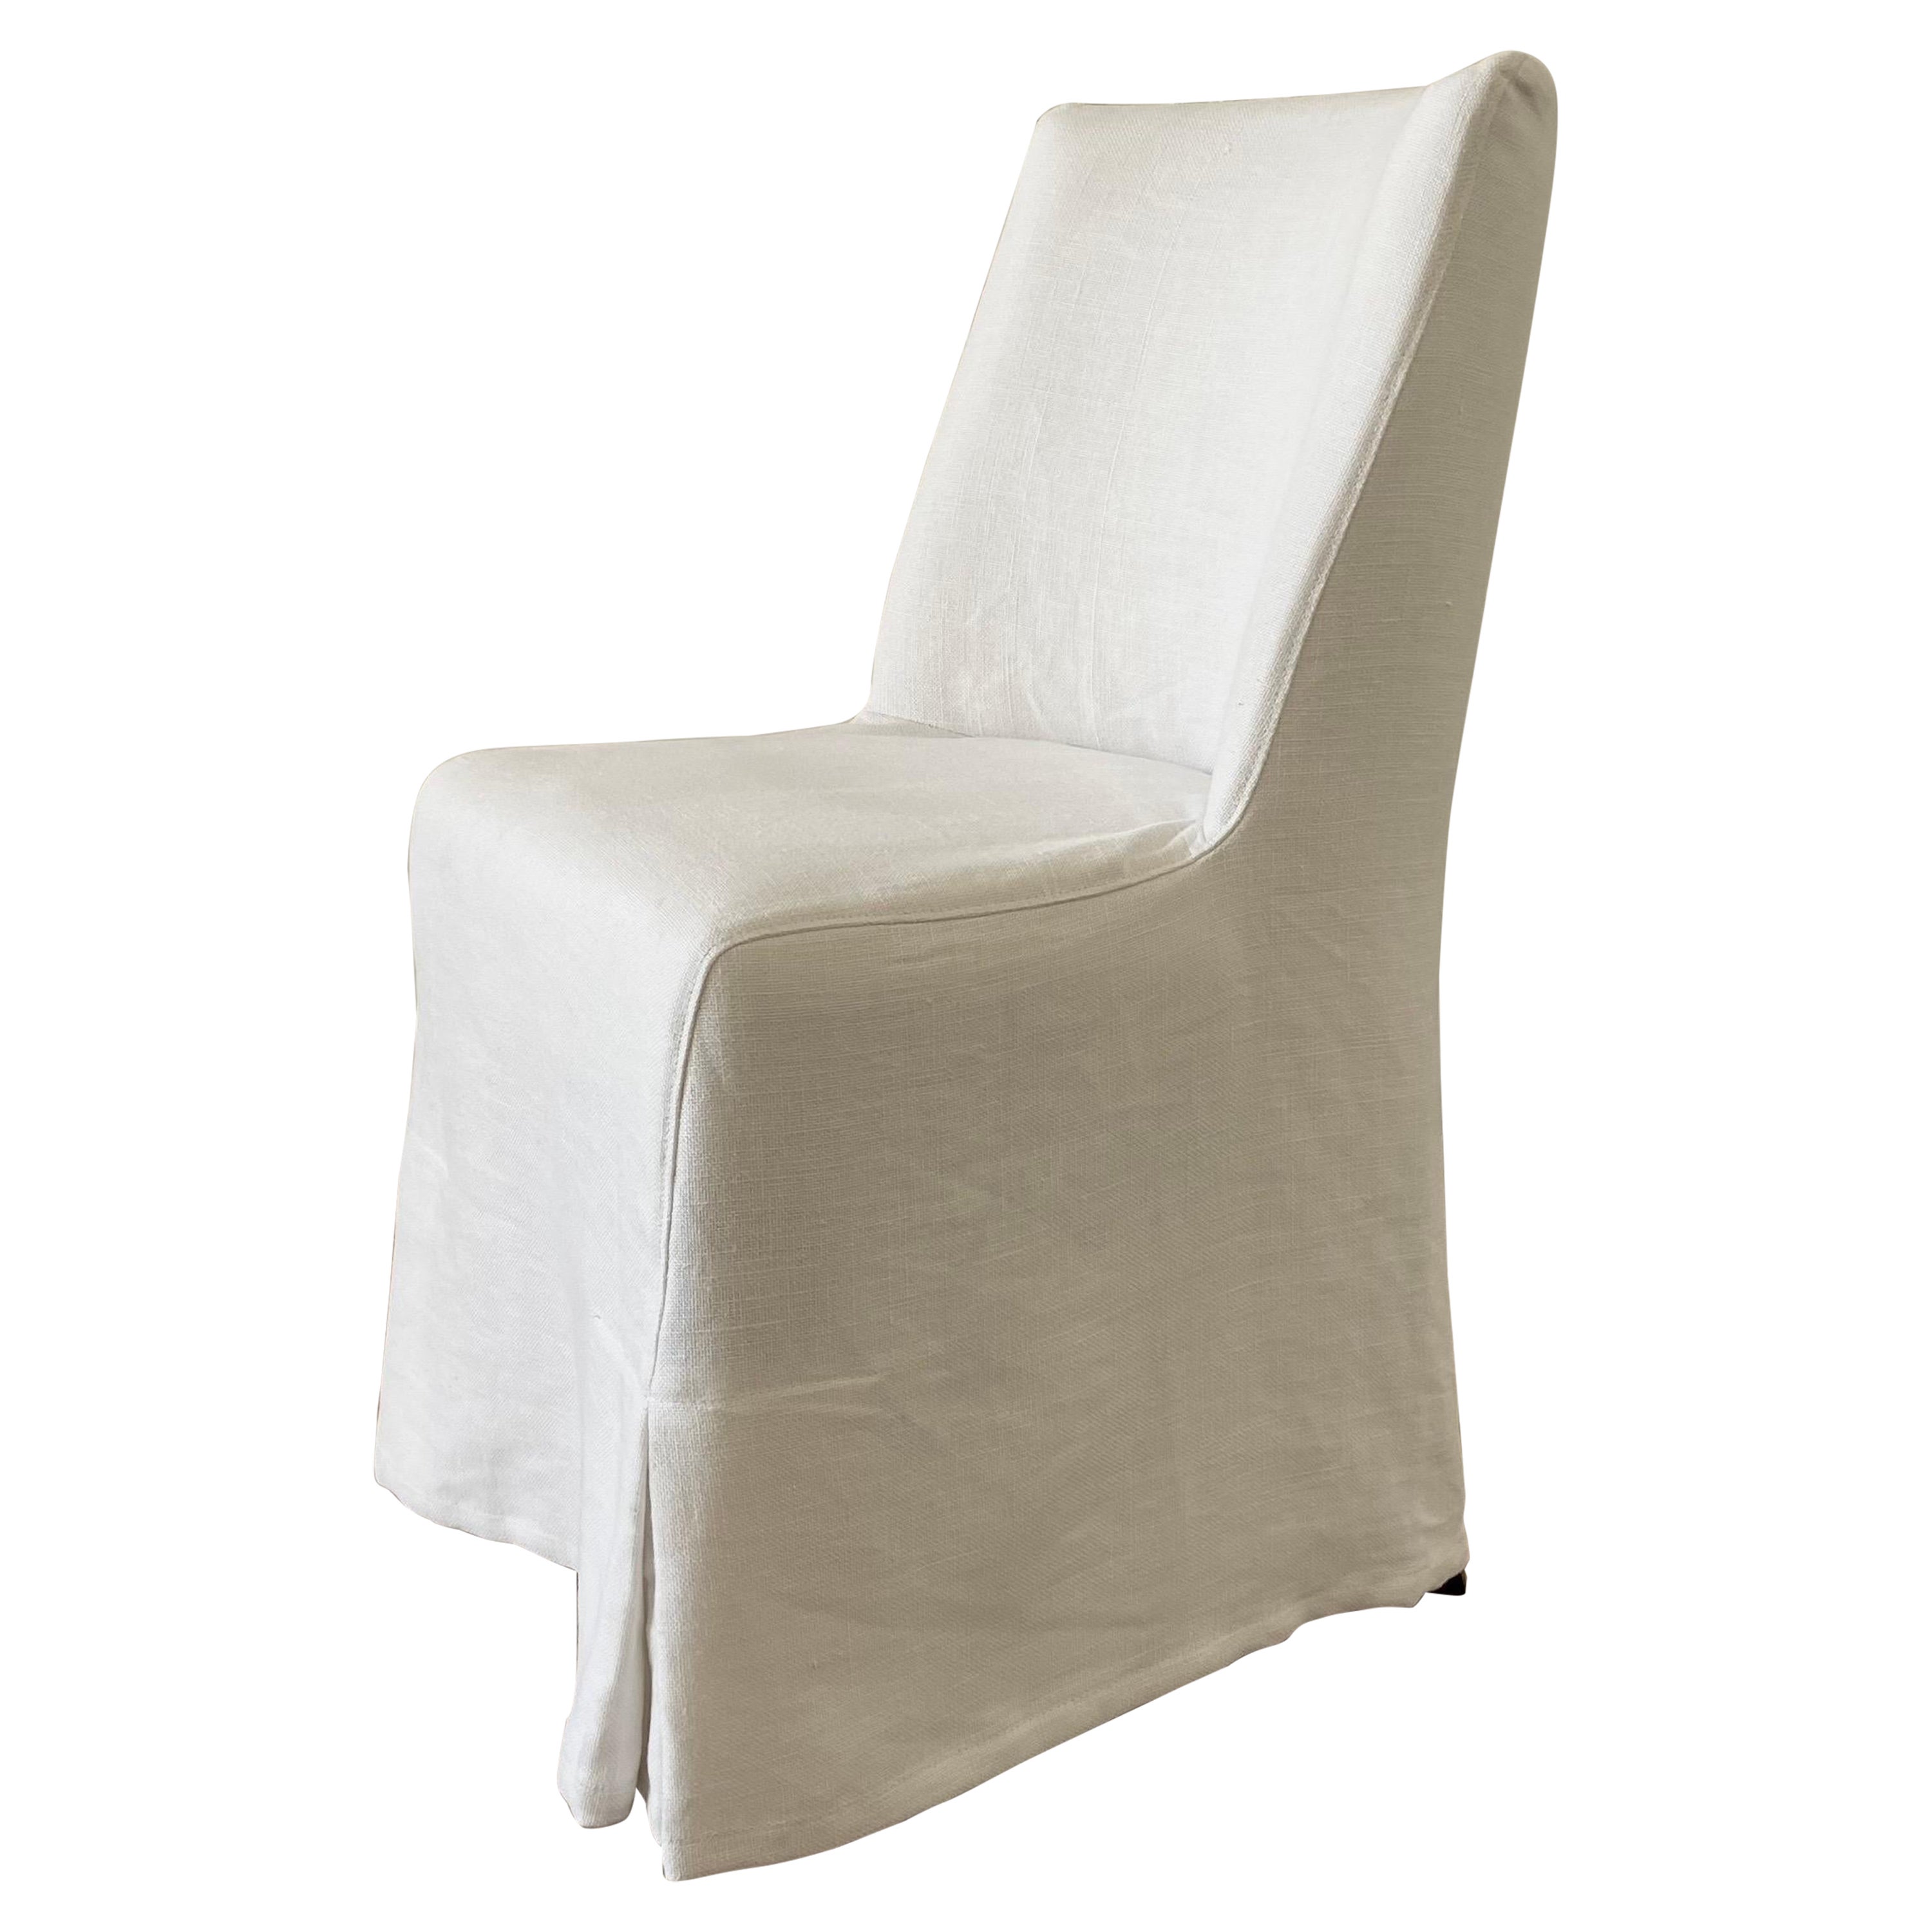 White Linen Slip Covered Dining Chair